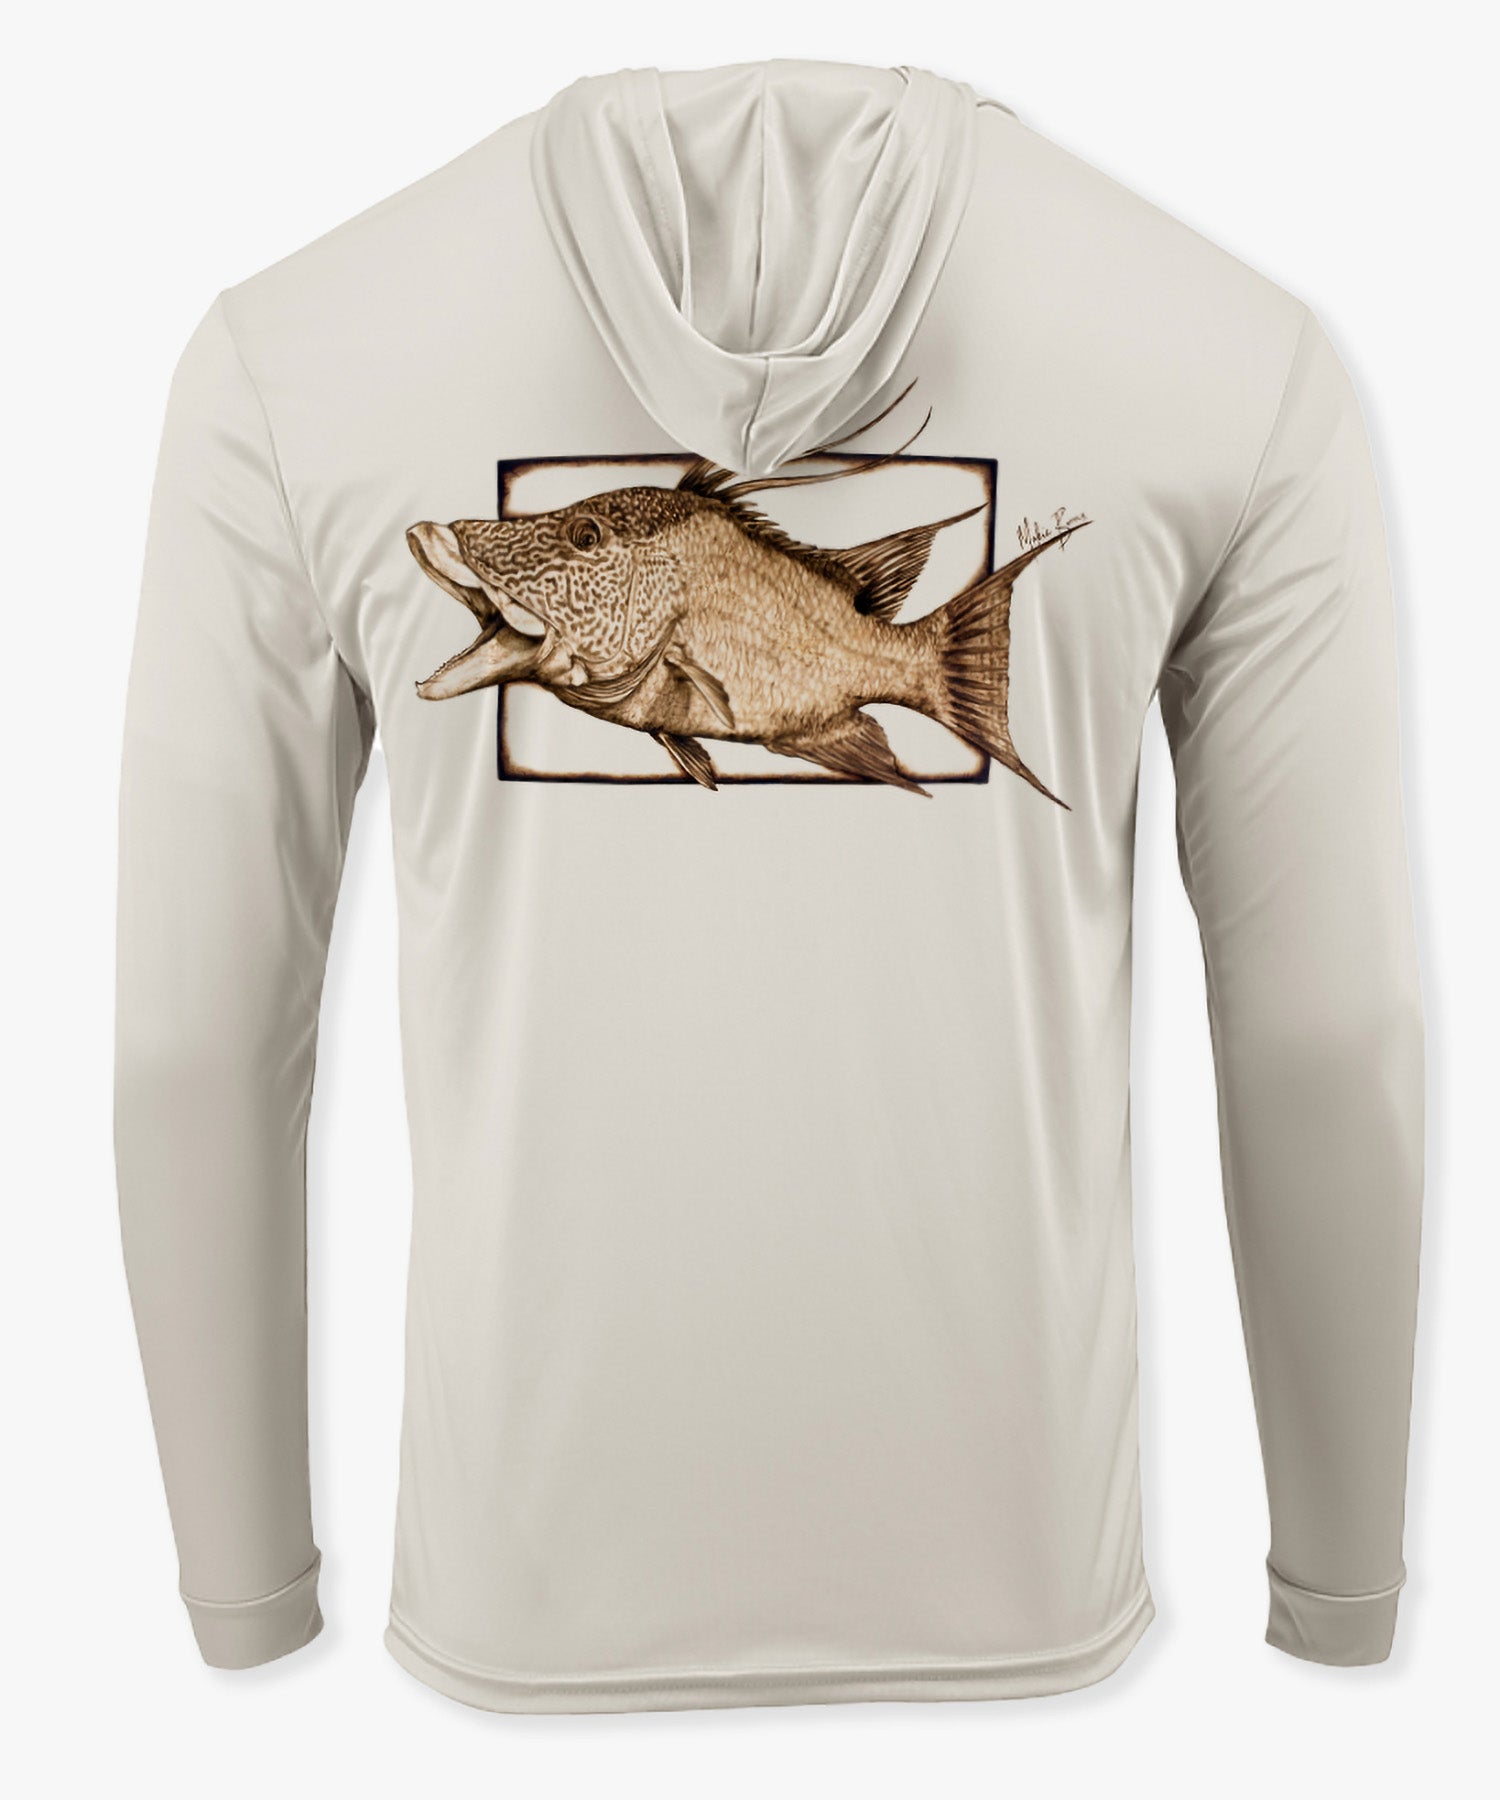 Hog Fish Long Sleeve Shirt